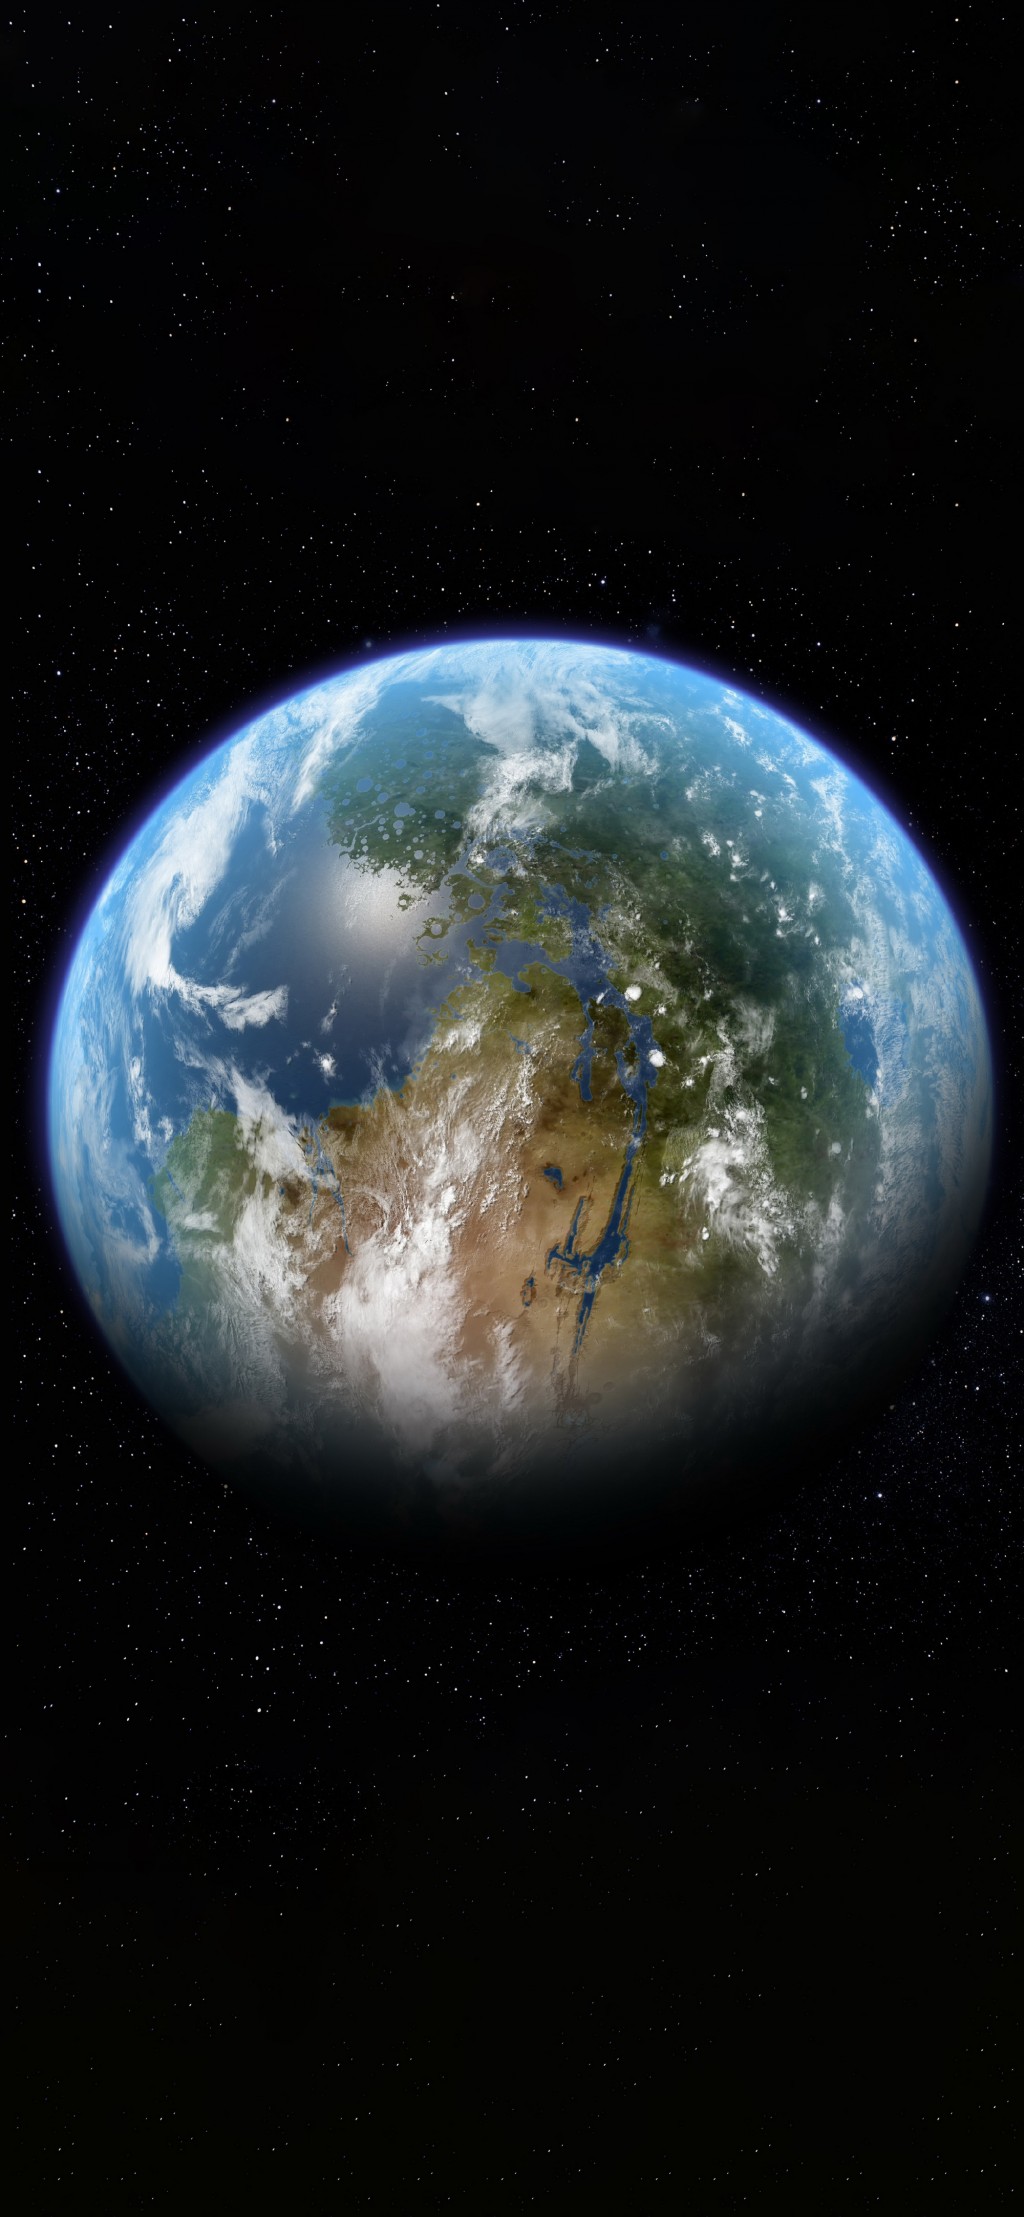 星球系列清新地球风景手机壁纸